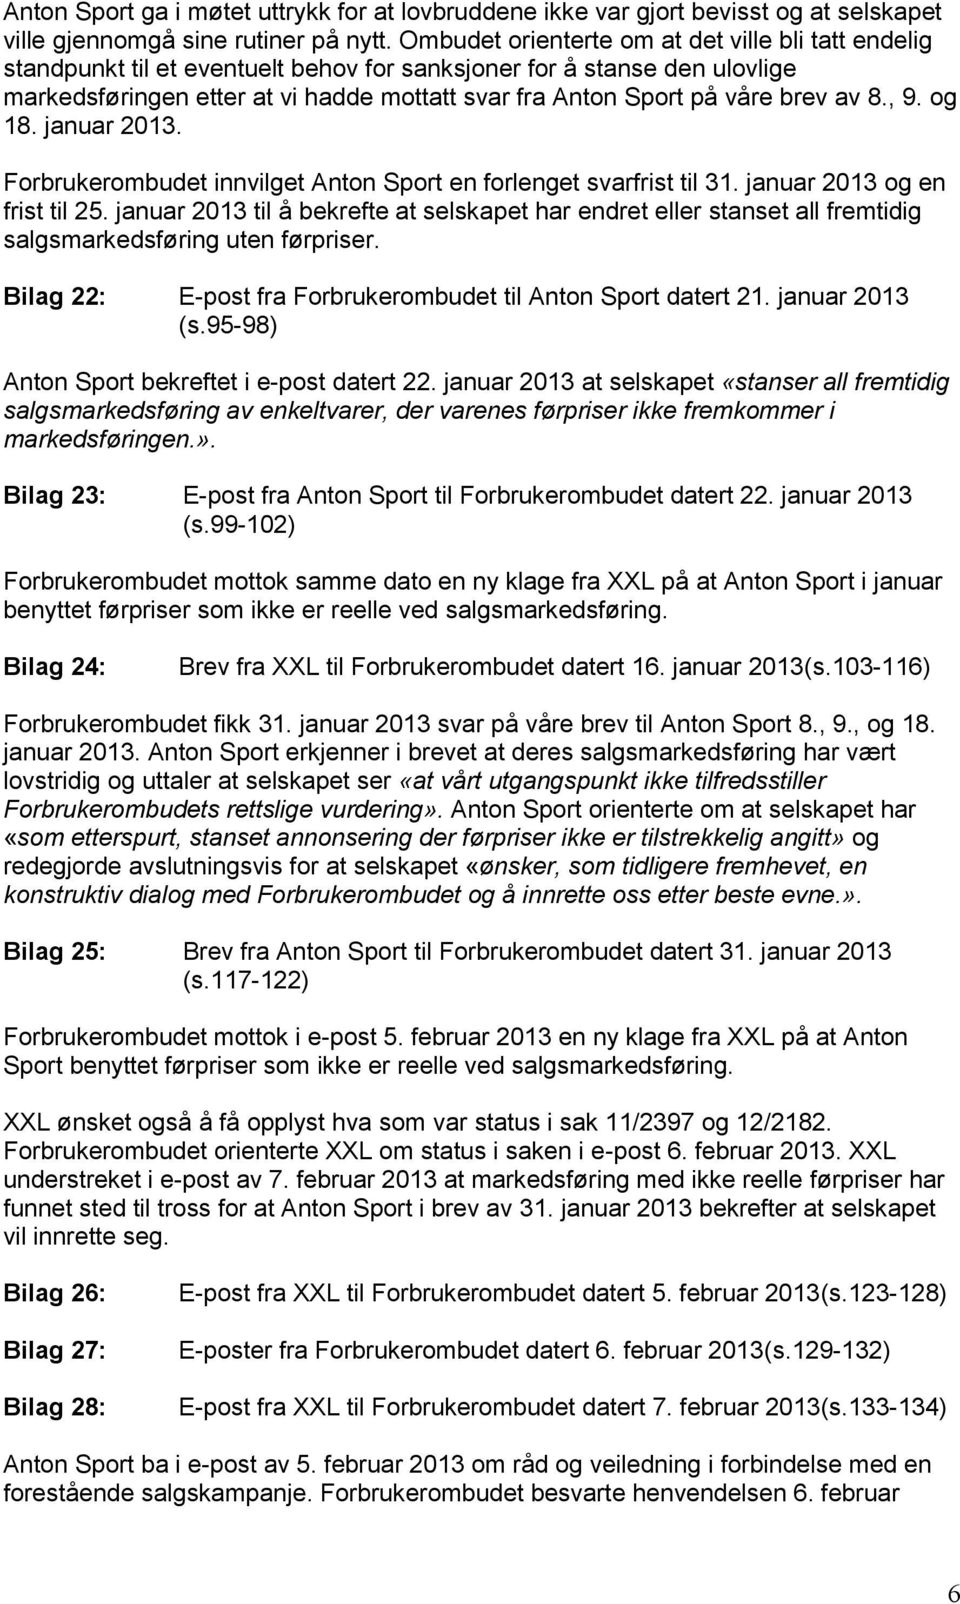 brev av 8., 9. og 18. januar 2013. Forbrukerombudet innvilget Anton Sport en forlenget svarfrist til 31. januar 2013 og en frist til 25.